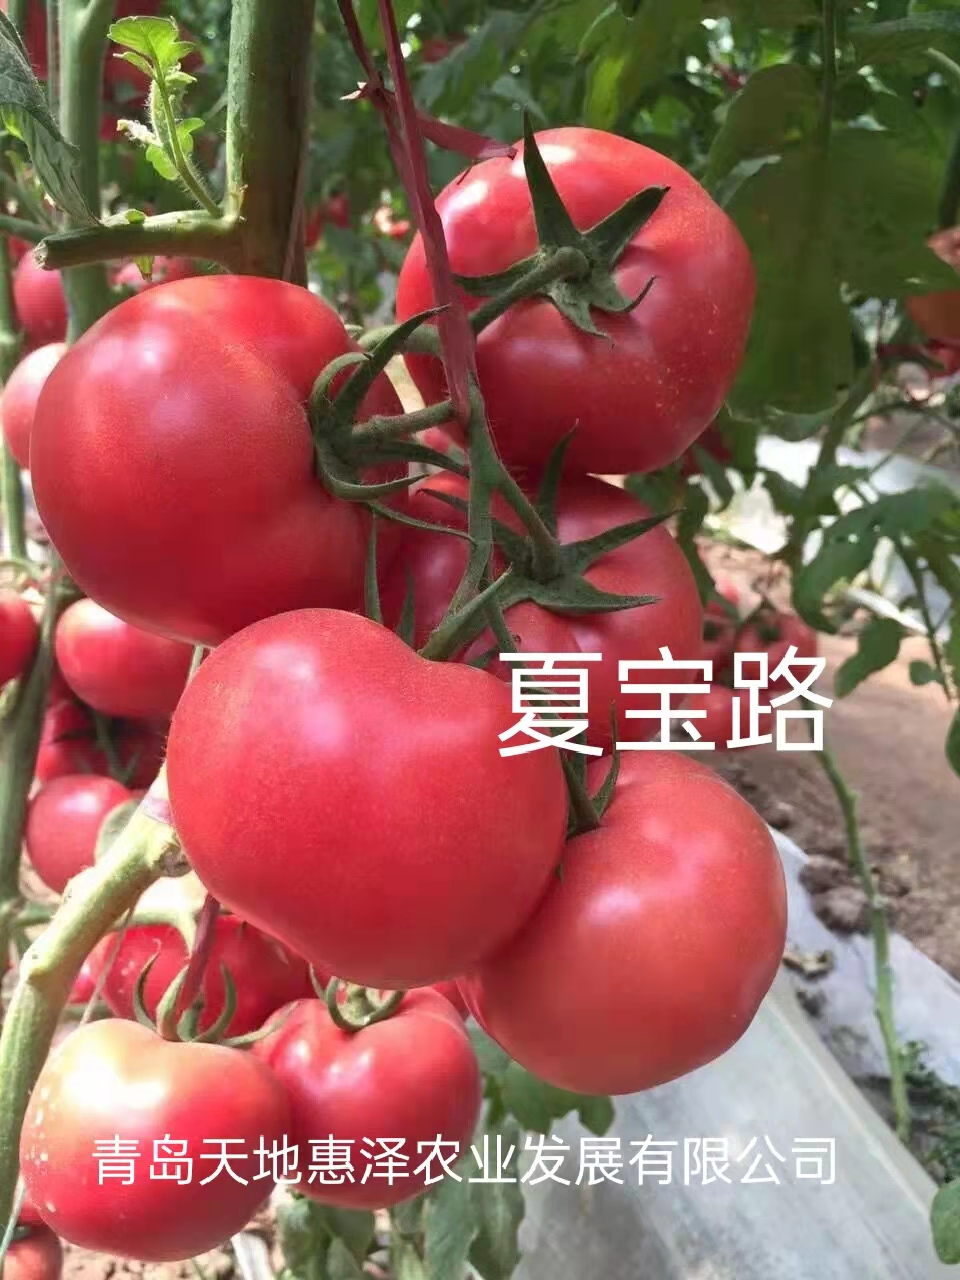 山东青岛夏宝路番茄种子批发公司销售价格 夏宝路种子 惠泽-夏宝路种子